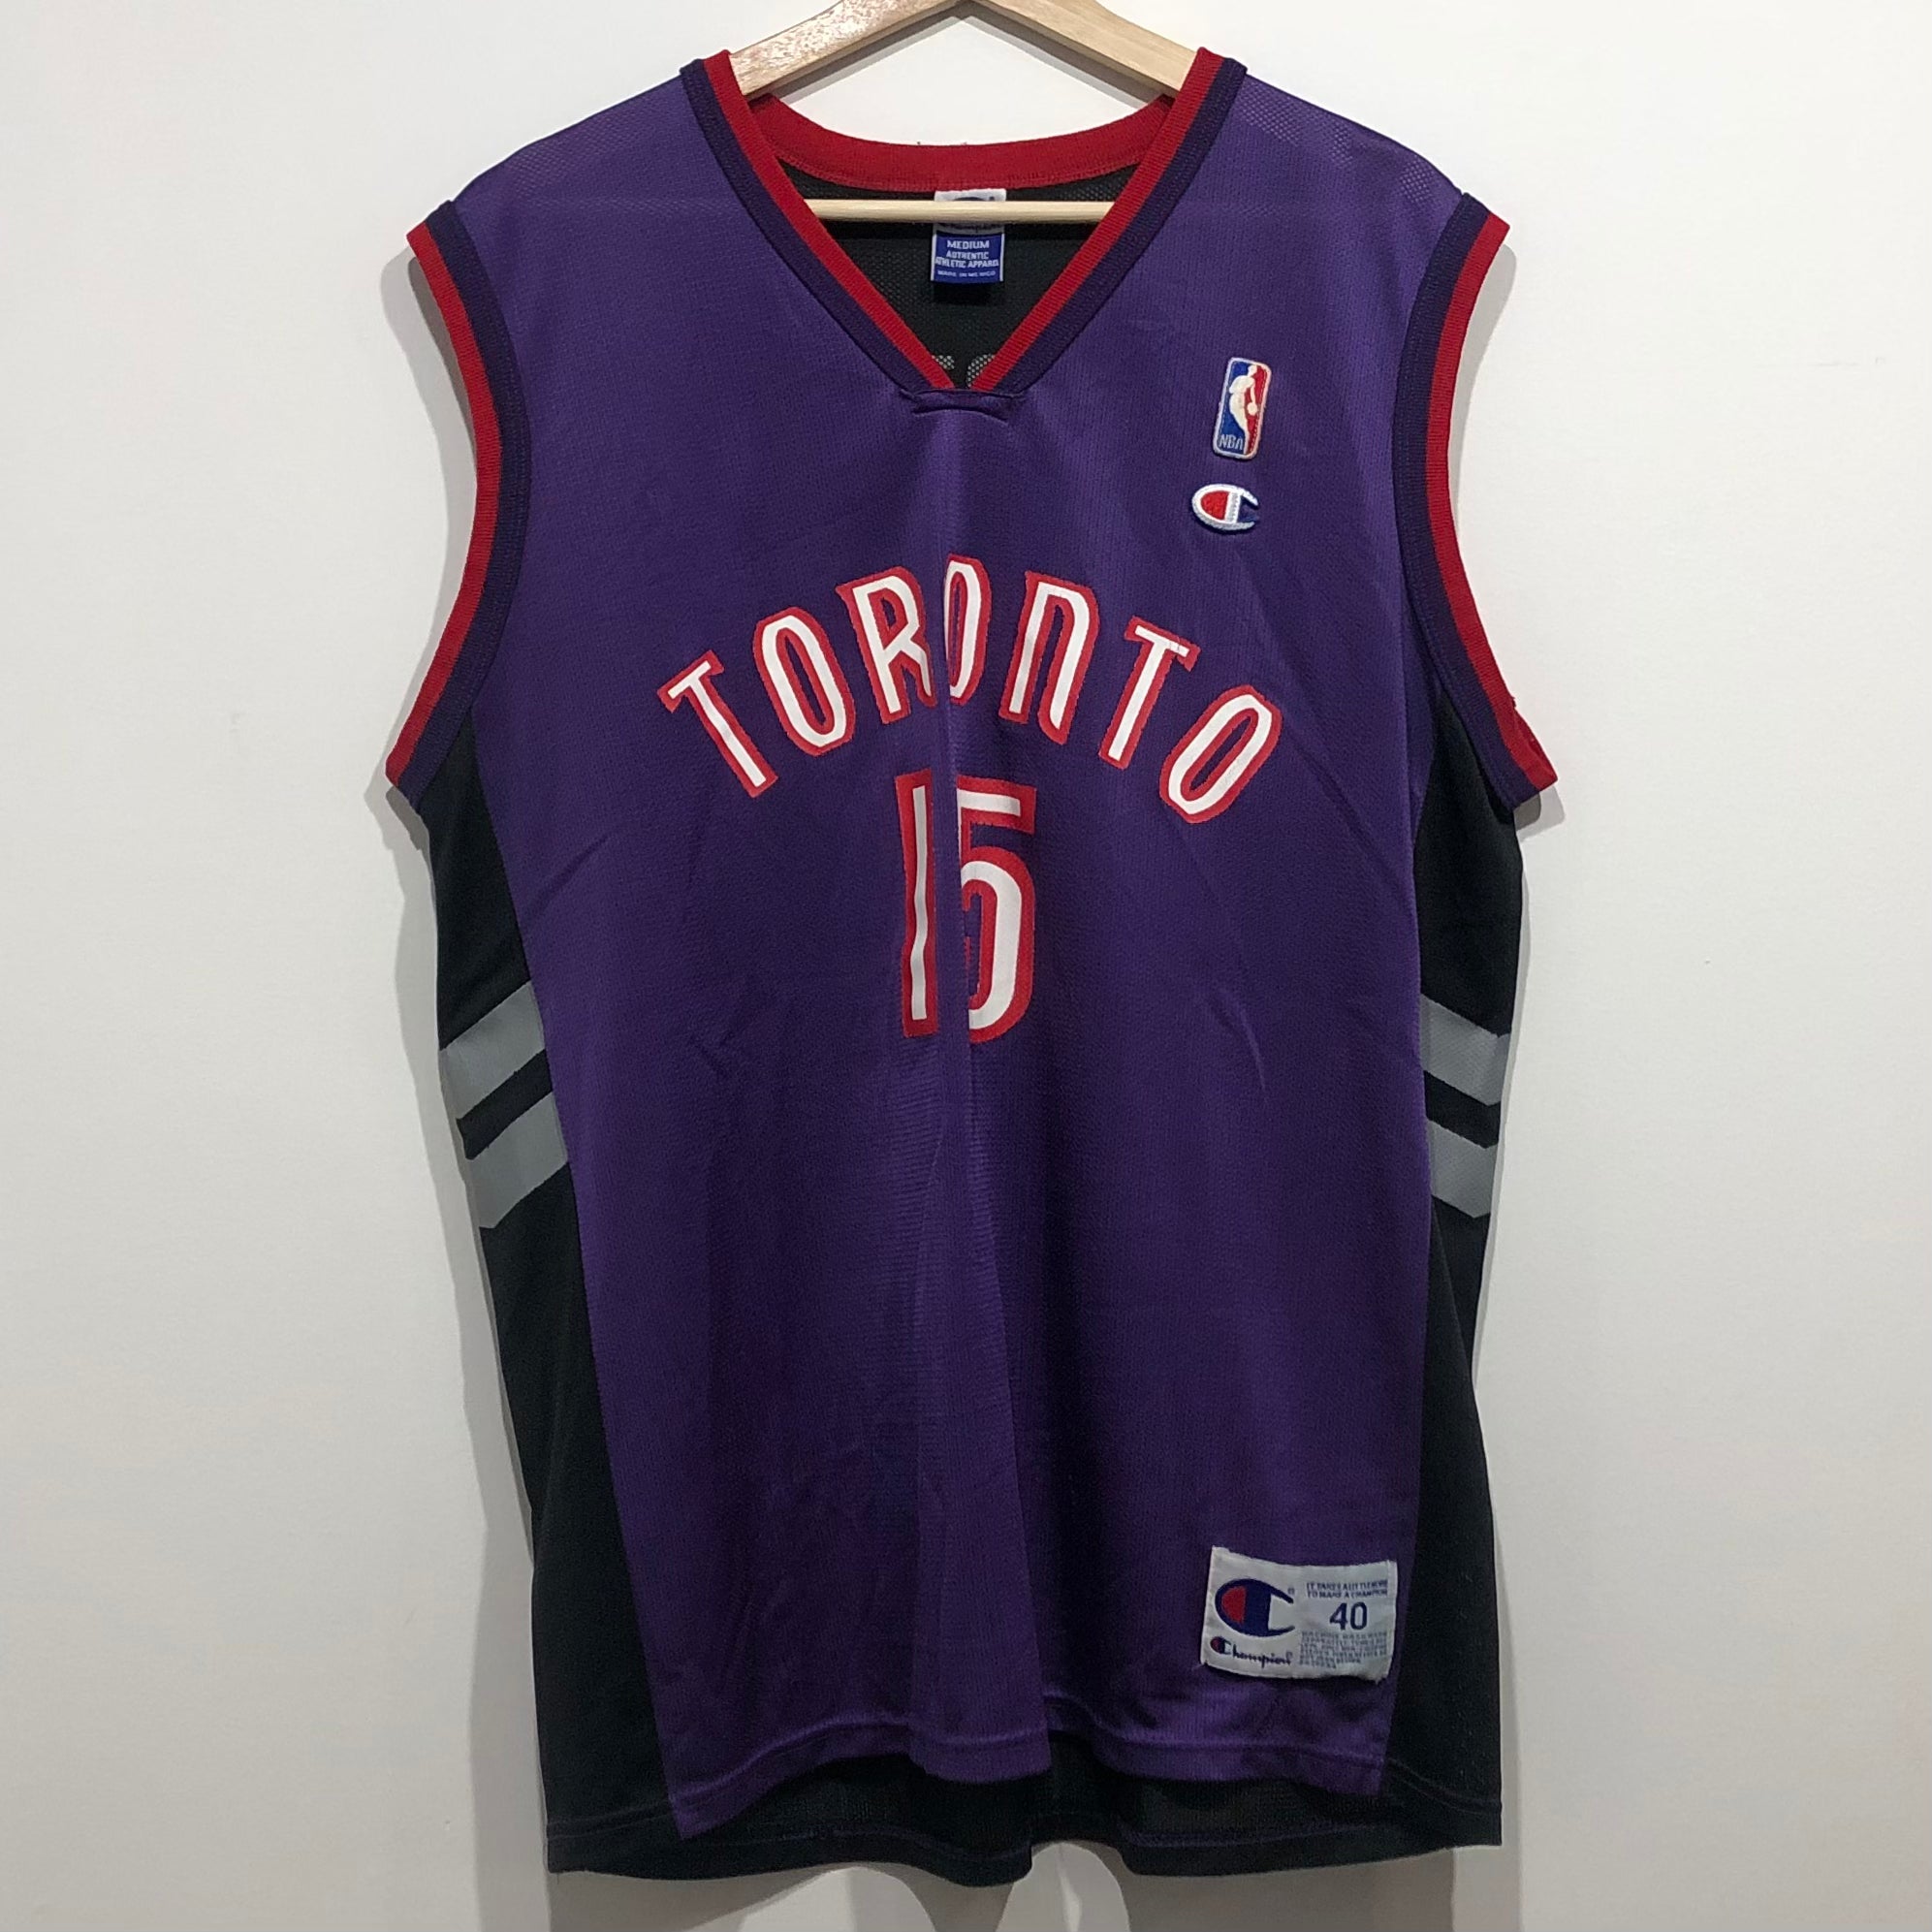 Titleless: The 2000-01 Toronto Raptors were closer to an NBA